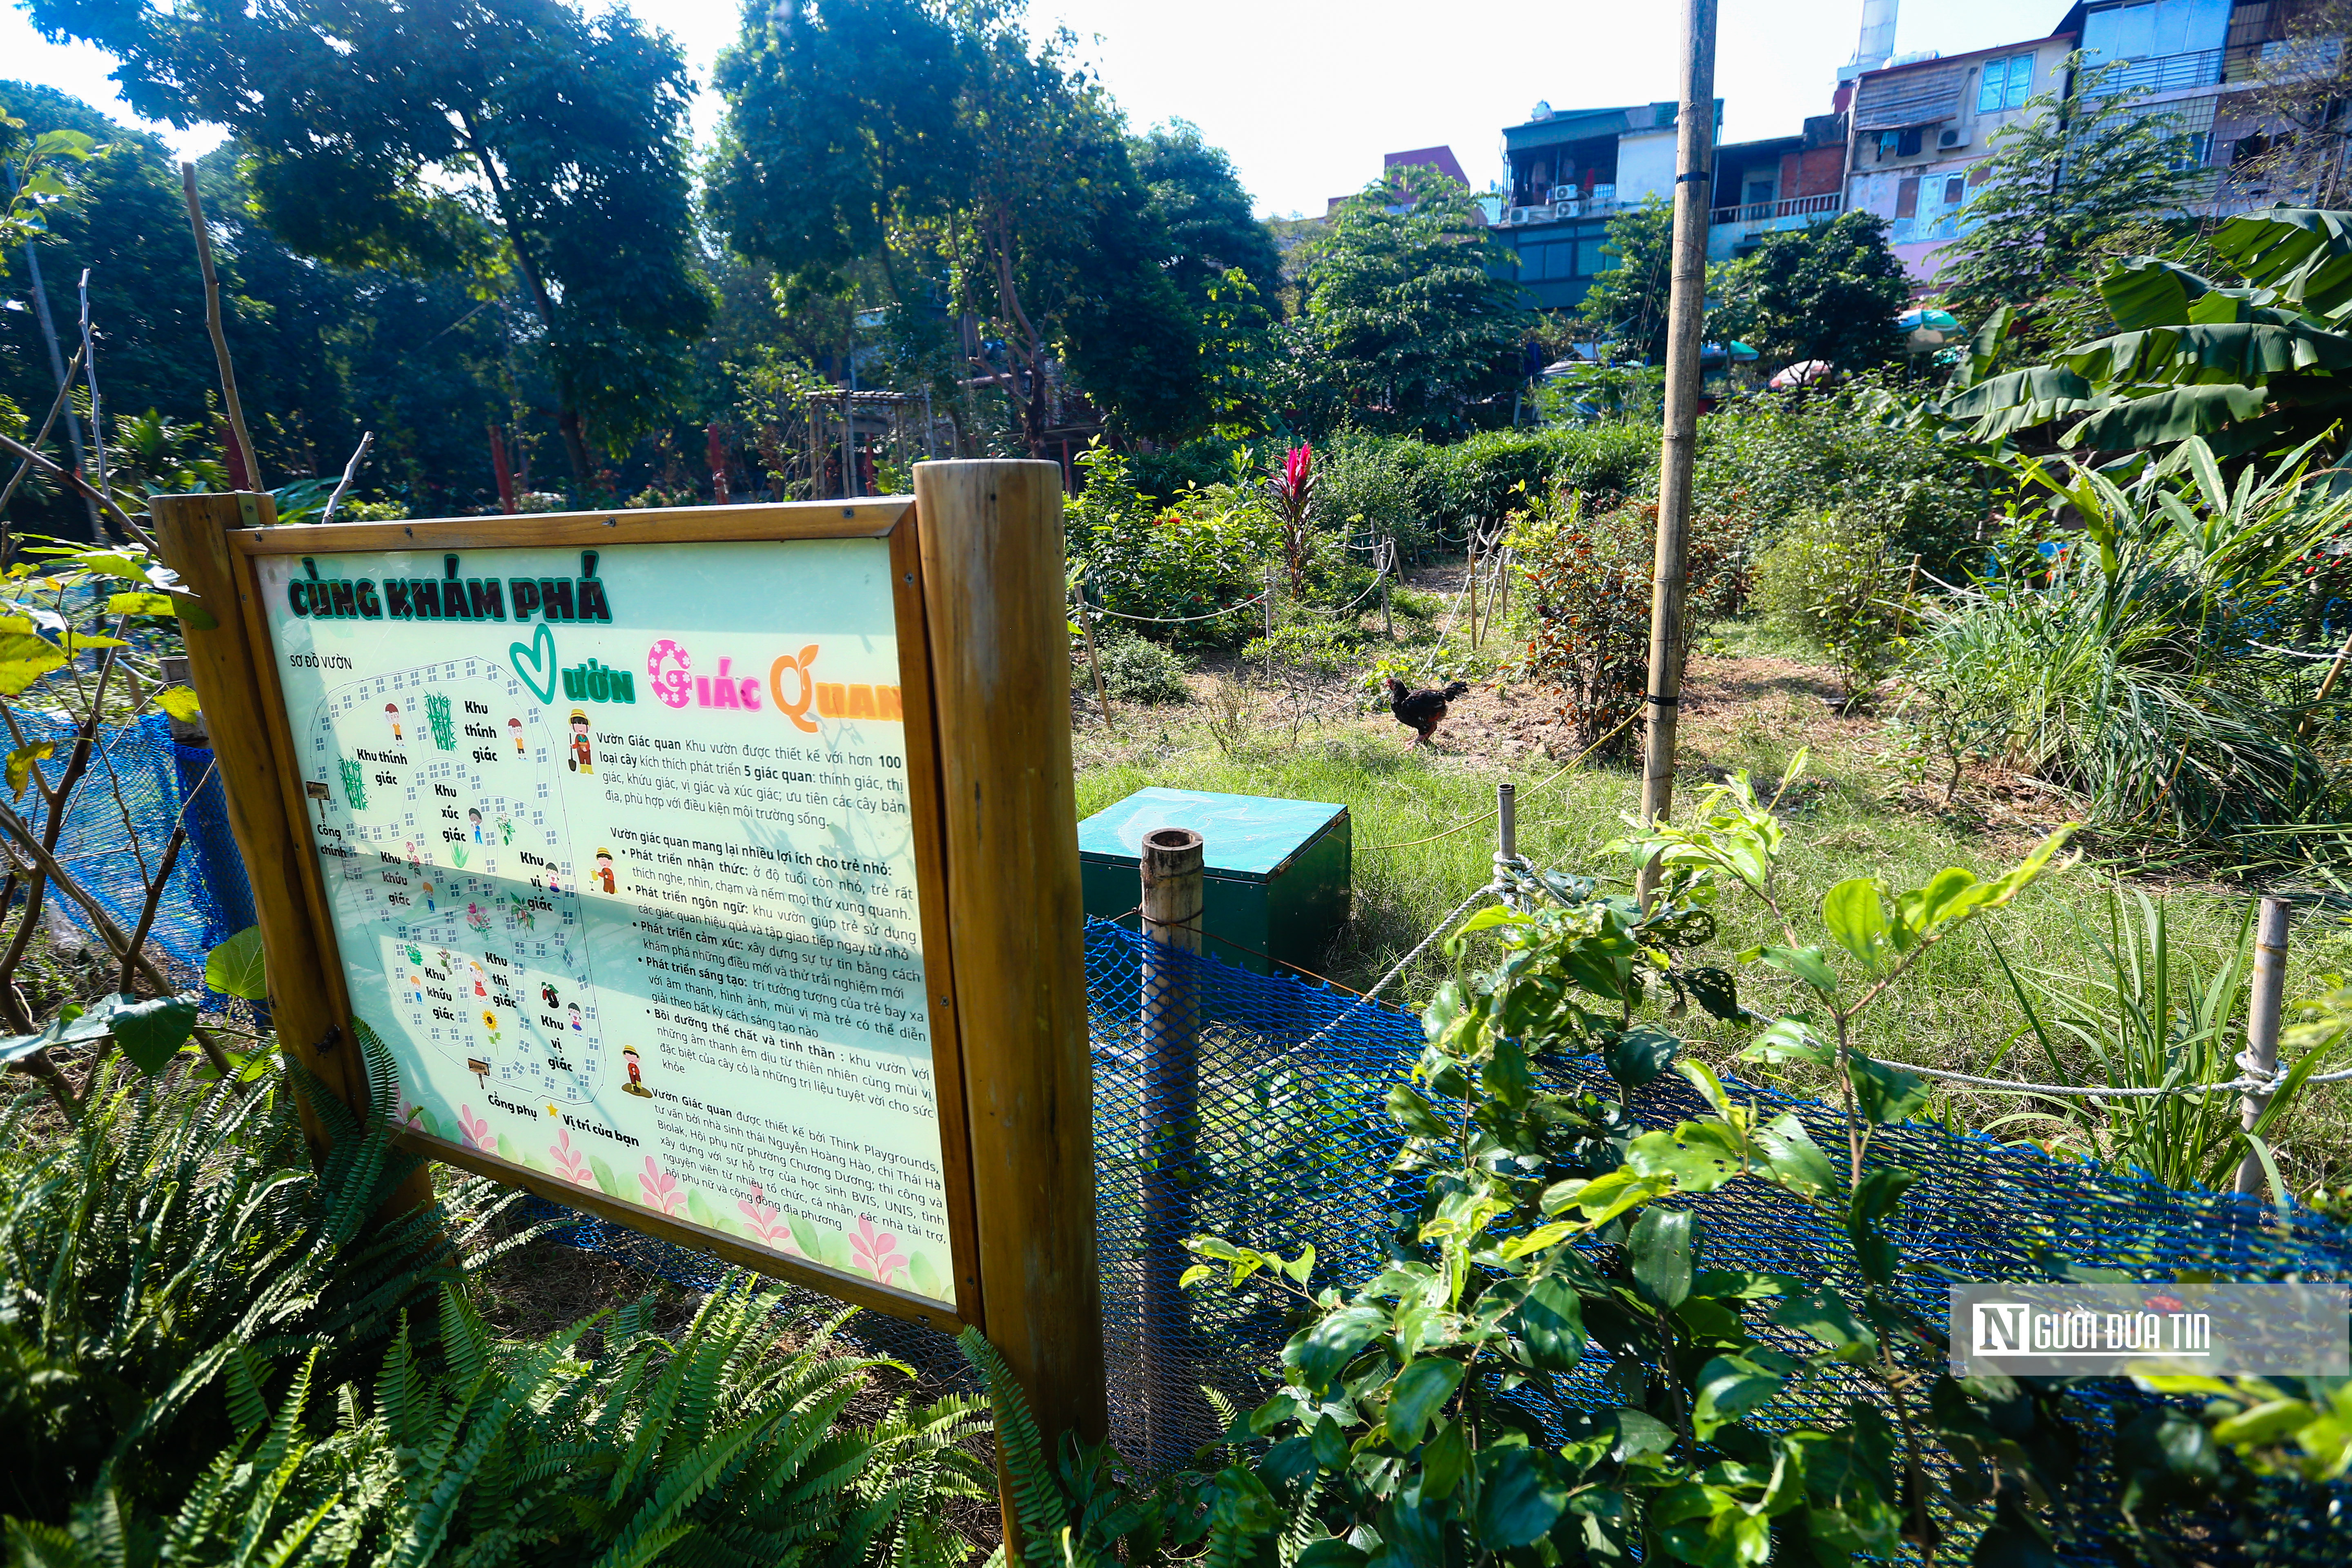 Dân sinh - Công viên rừng giữa trung tâm Thủ đô được cải tạo từ bãi rác (Hình 12).